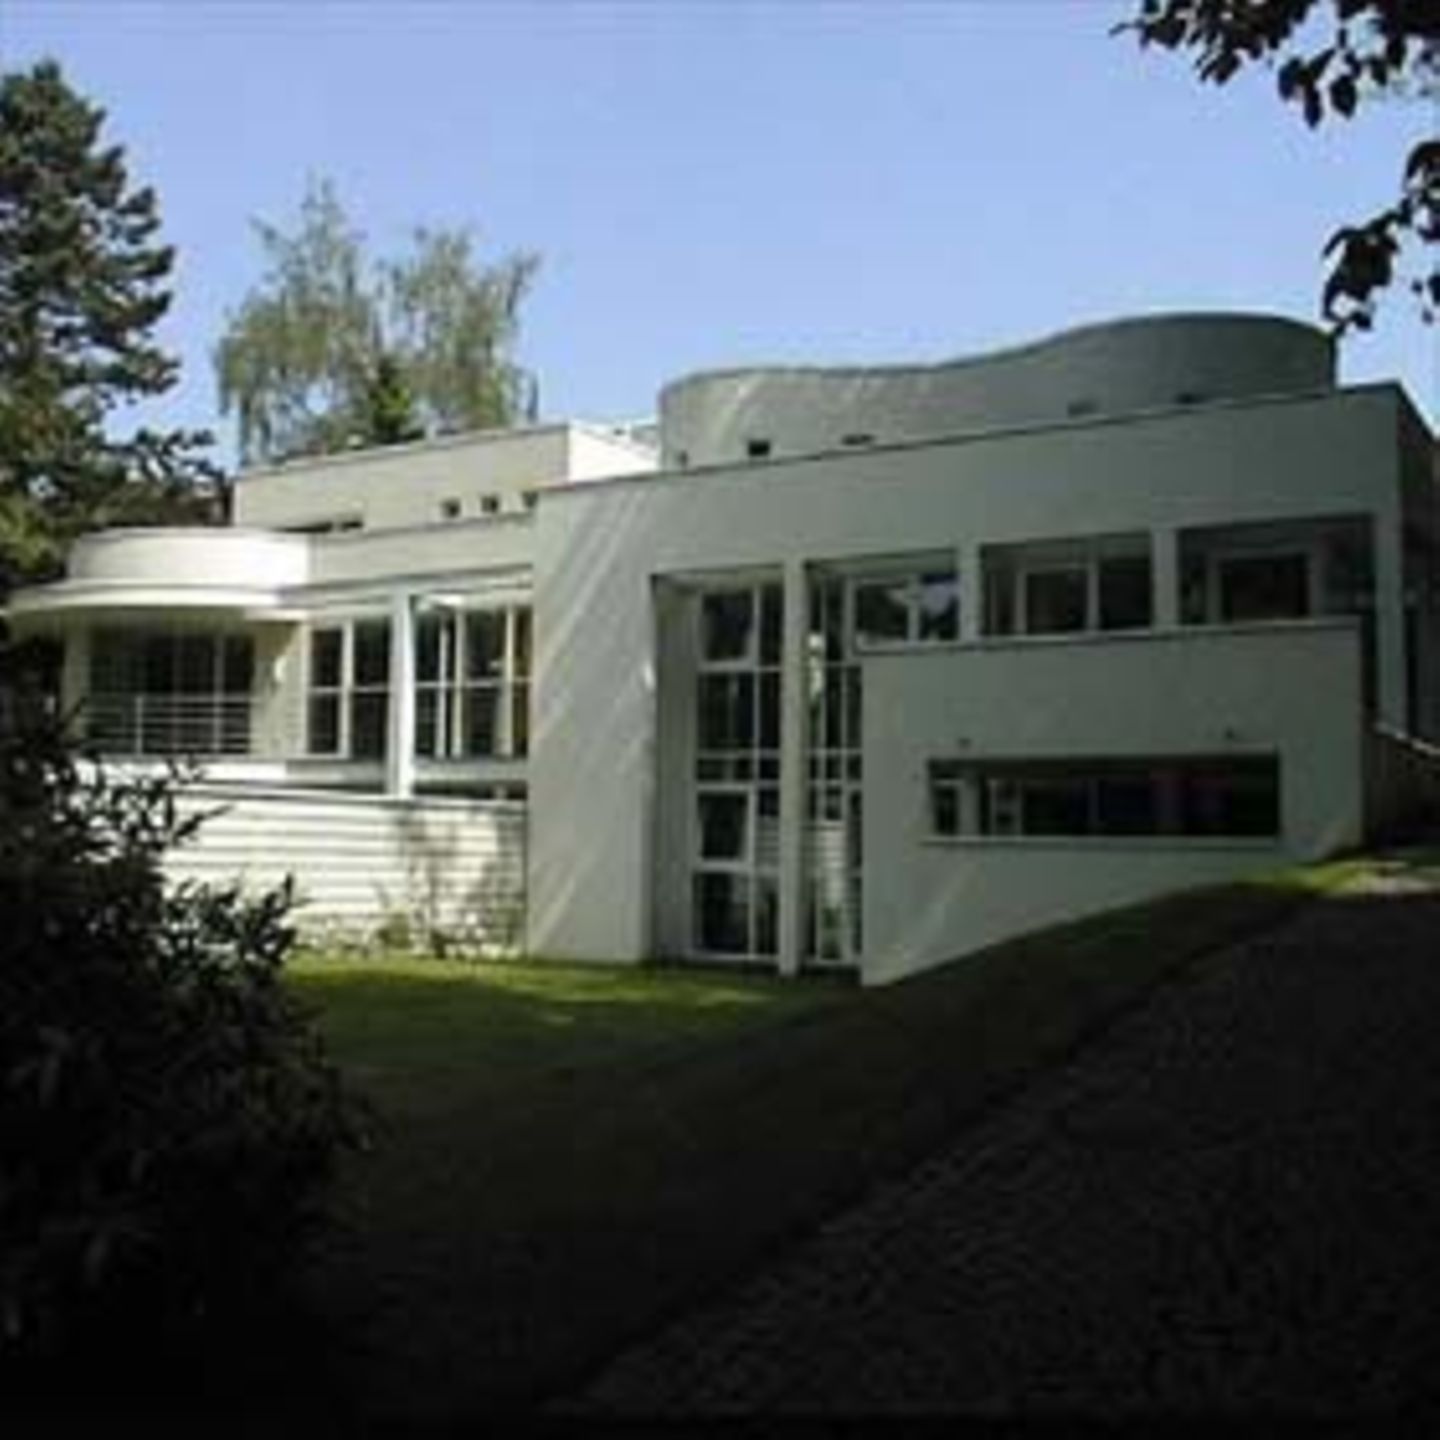 Das Wohn- und Bürogebäude von Hermann Klapheck in Recklinghausen zeigt beispielhaft, wie die Architekten Innen- und Außenraum durch Kontraste modellieren.